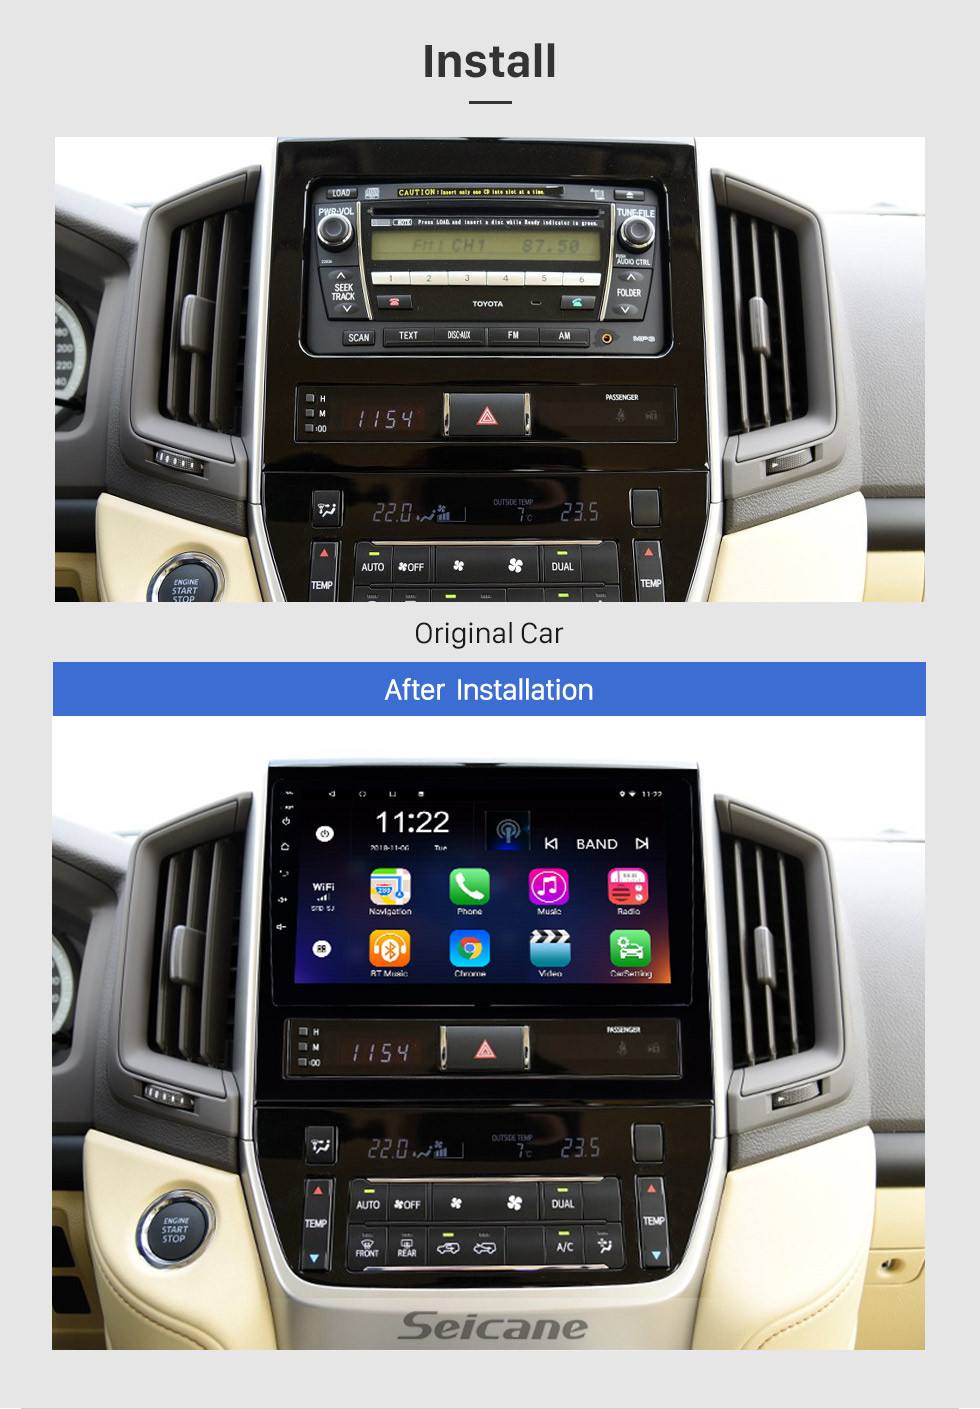 Seicane 9 Polegada Android 10.0 Ecrã Táctil rádio Bluetooth sistema de Navegação GPS Para 2016 Toyota Land Cruiser 200 apoio TPMS DVR OBD II USB SD 3G Wi-fi Câmera traseira Controle de volante HD 1080 P Vídeo AUX